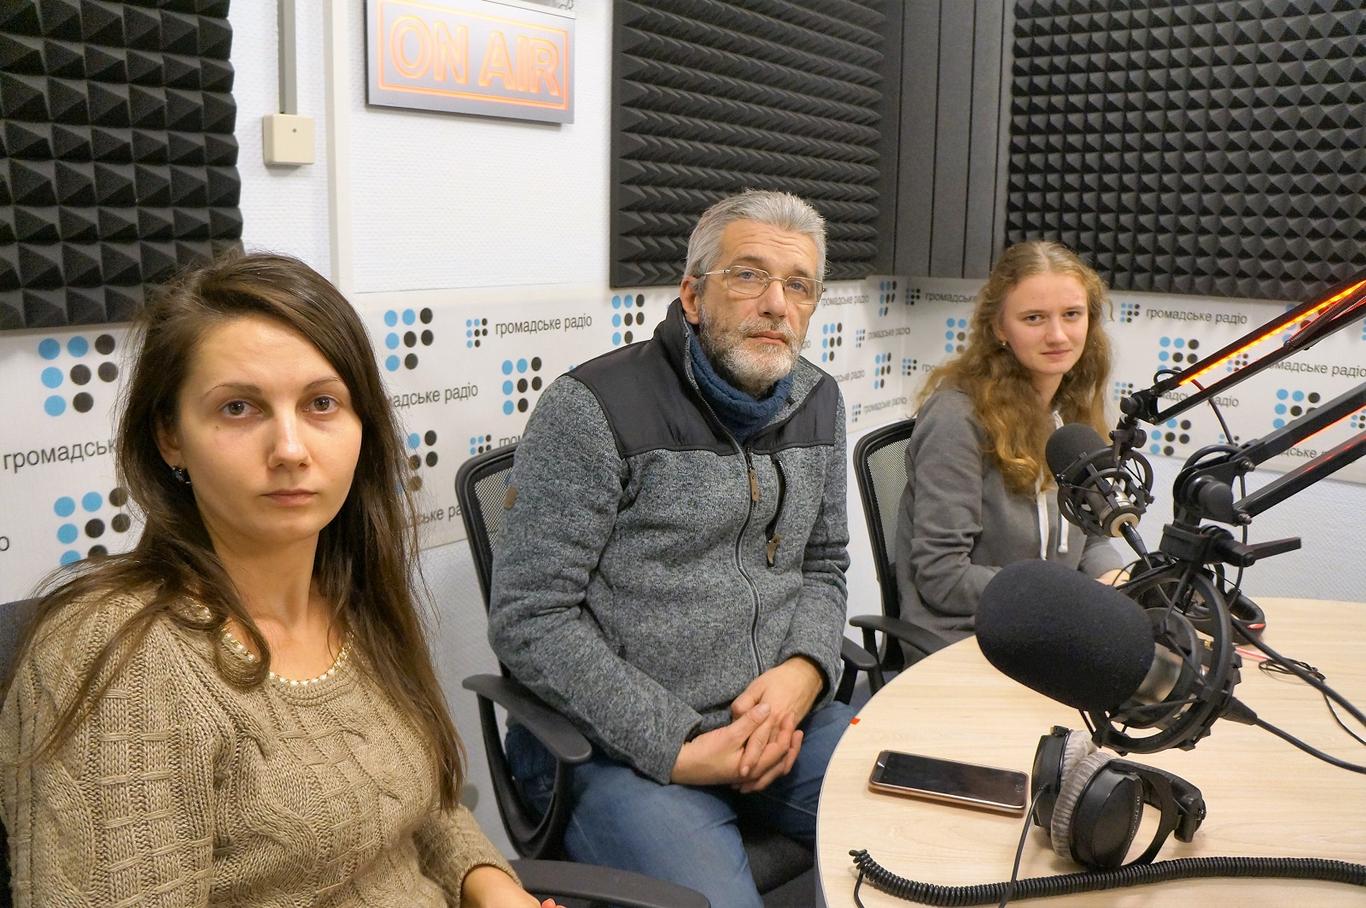 Как личные данные журналисток «Громадського радио» попали на сайт боевиков